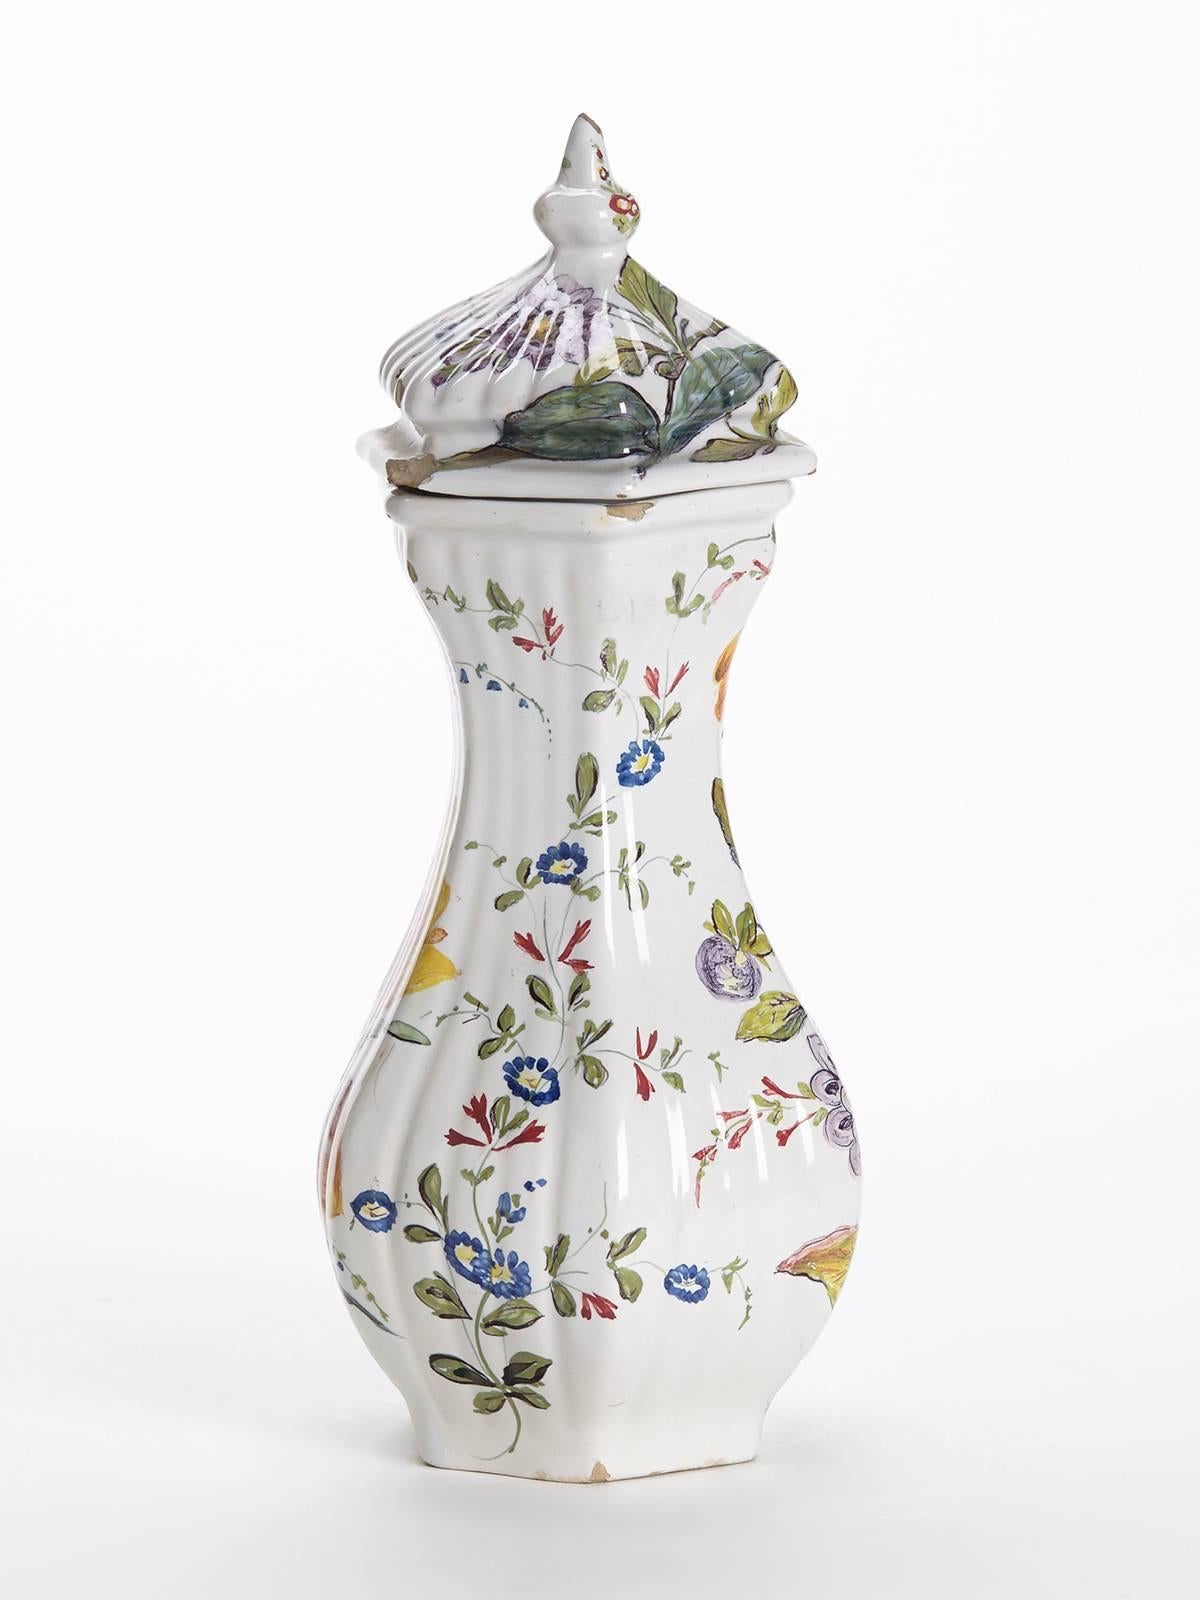 Eine feine und elegante antike italienische Le Nove floral bemalte Fayence Vase und Deckel. Die sechseckige Vase aus Steingut hat einen geformten, gerippten Körper, der von Hand mit leuchtenden Blumenmustern auf weißem Grund bemalt ist. Die Vase hat